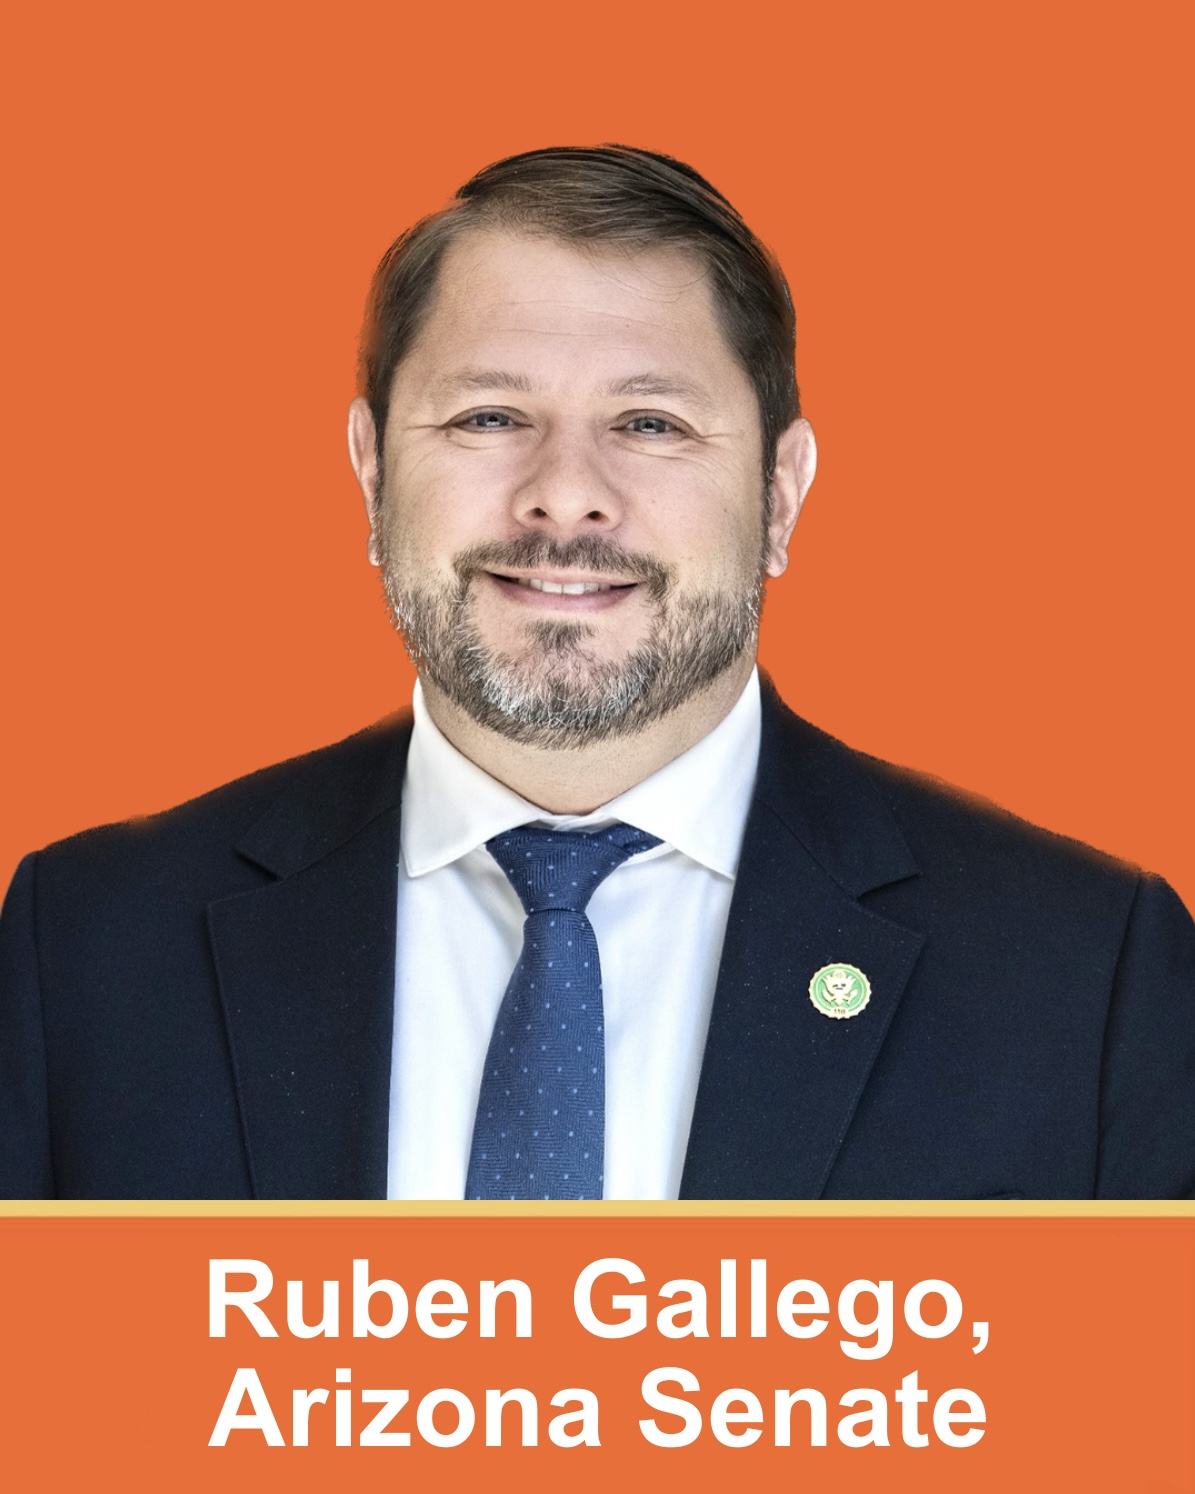 Ruben Gallego, Arizona Senate